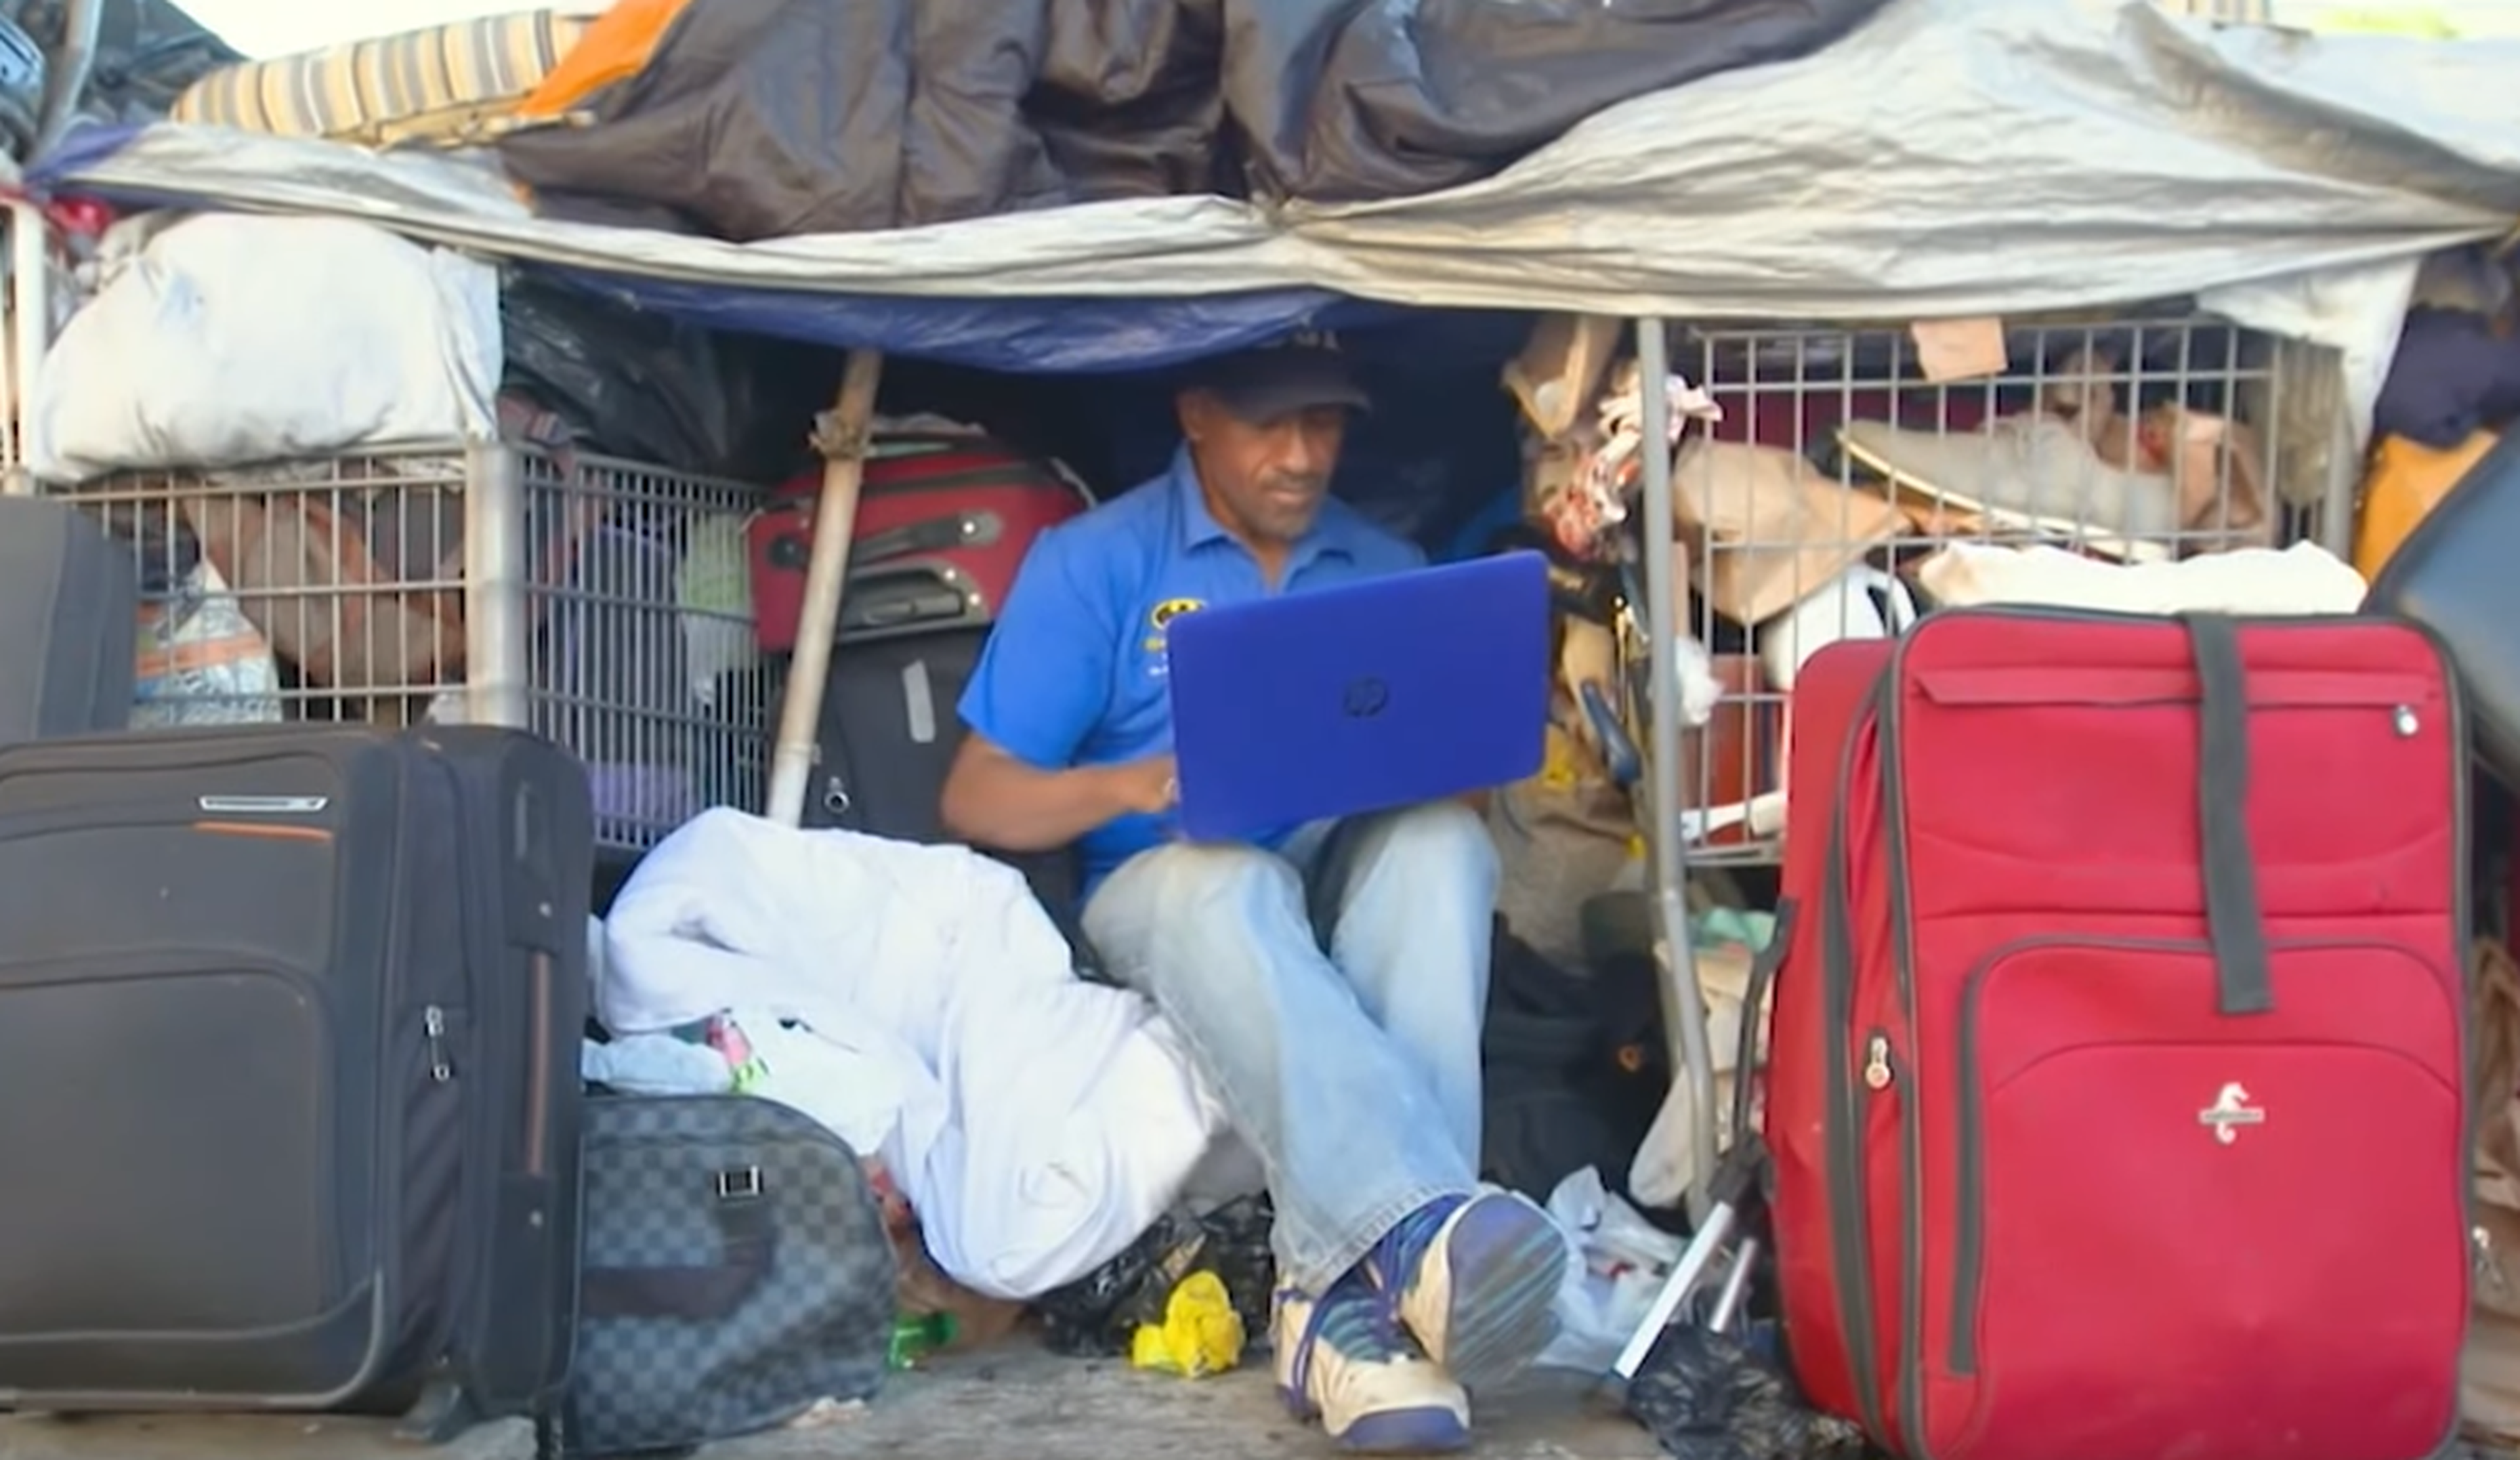 Shawn Pleasants, de 52 años de edad, entre sus pertenencias en las calles de Los Ángeles